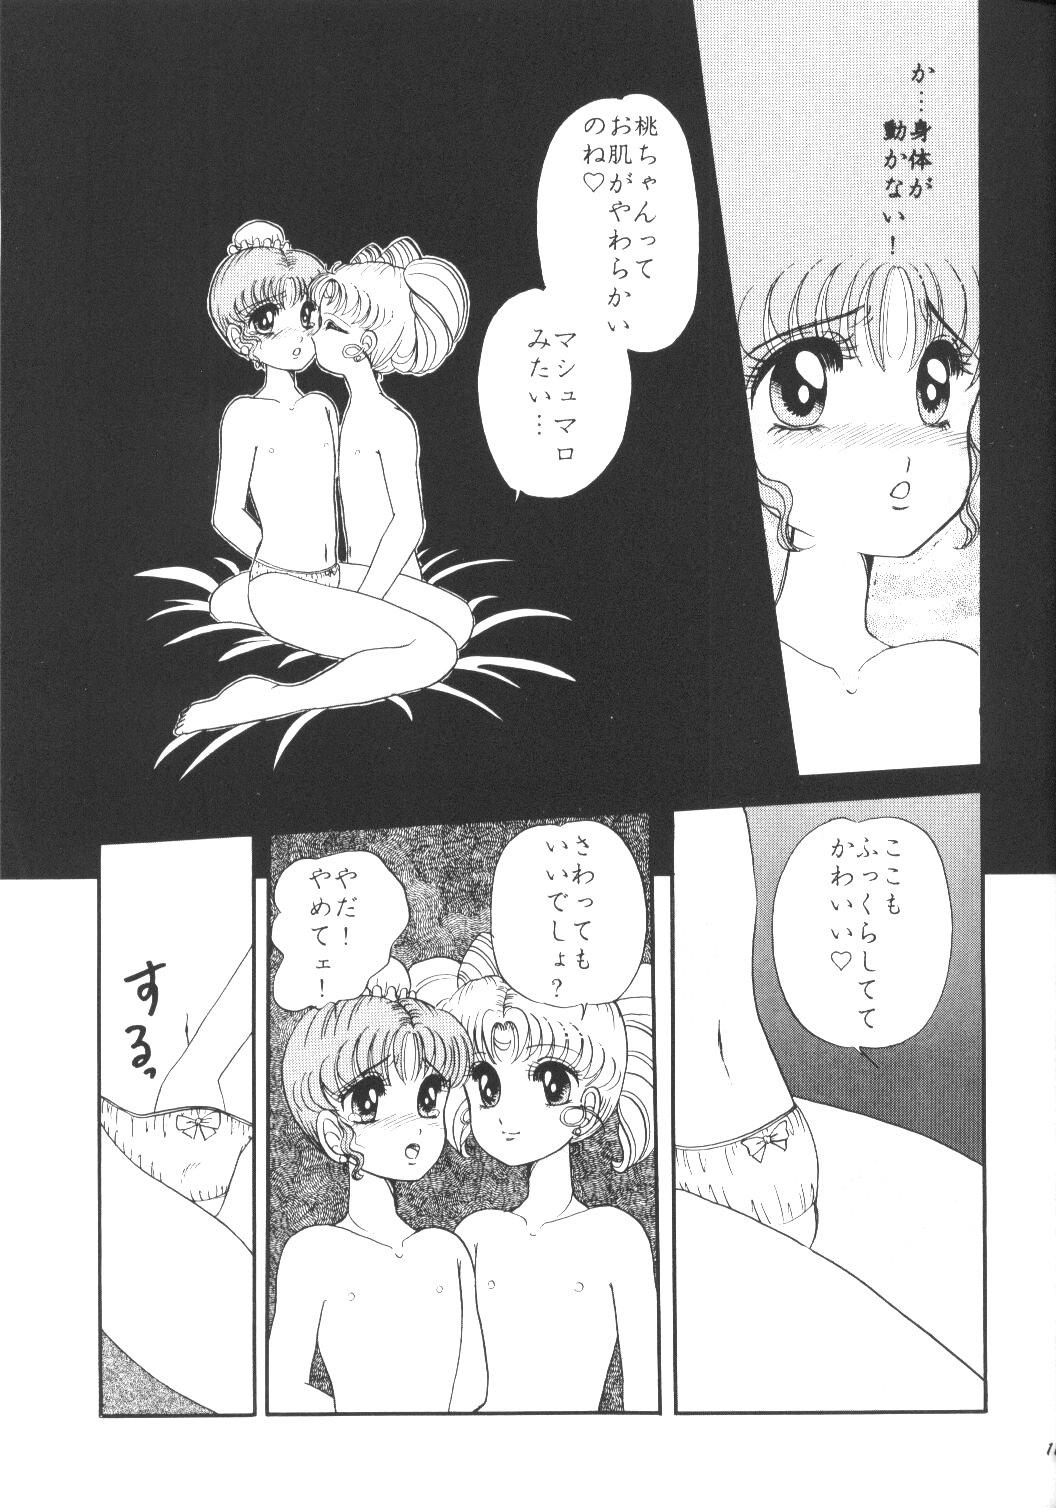 Ladyboy Yuubari Meron Gumi 2 - Sailor moon Comendo - Page 10